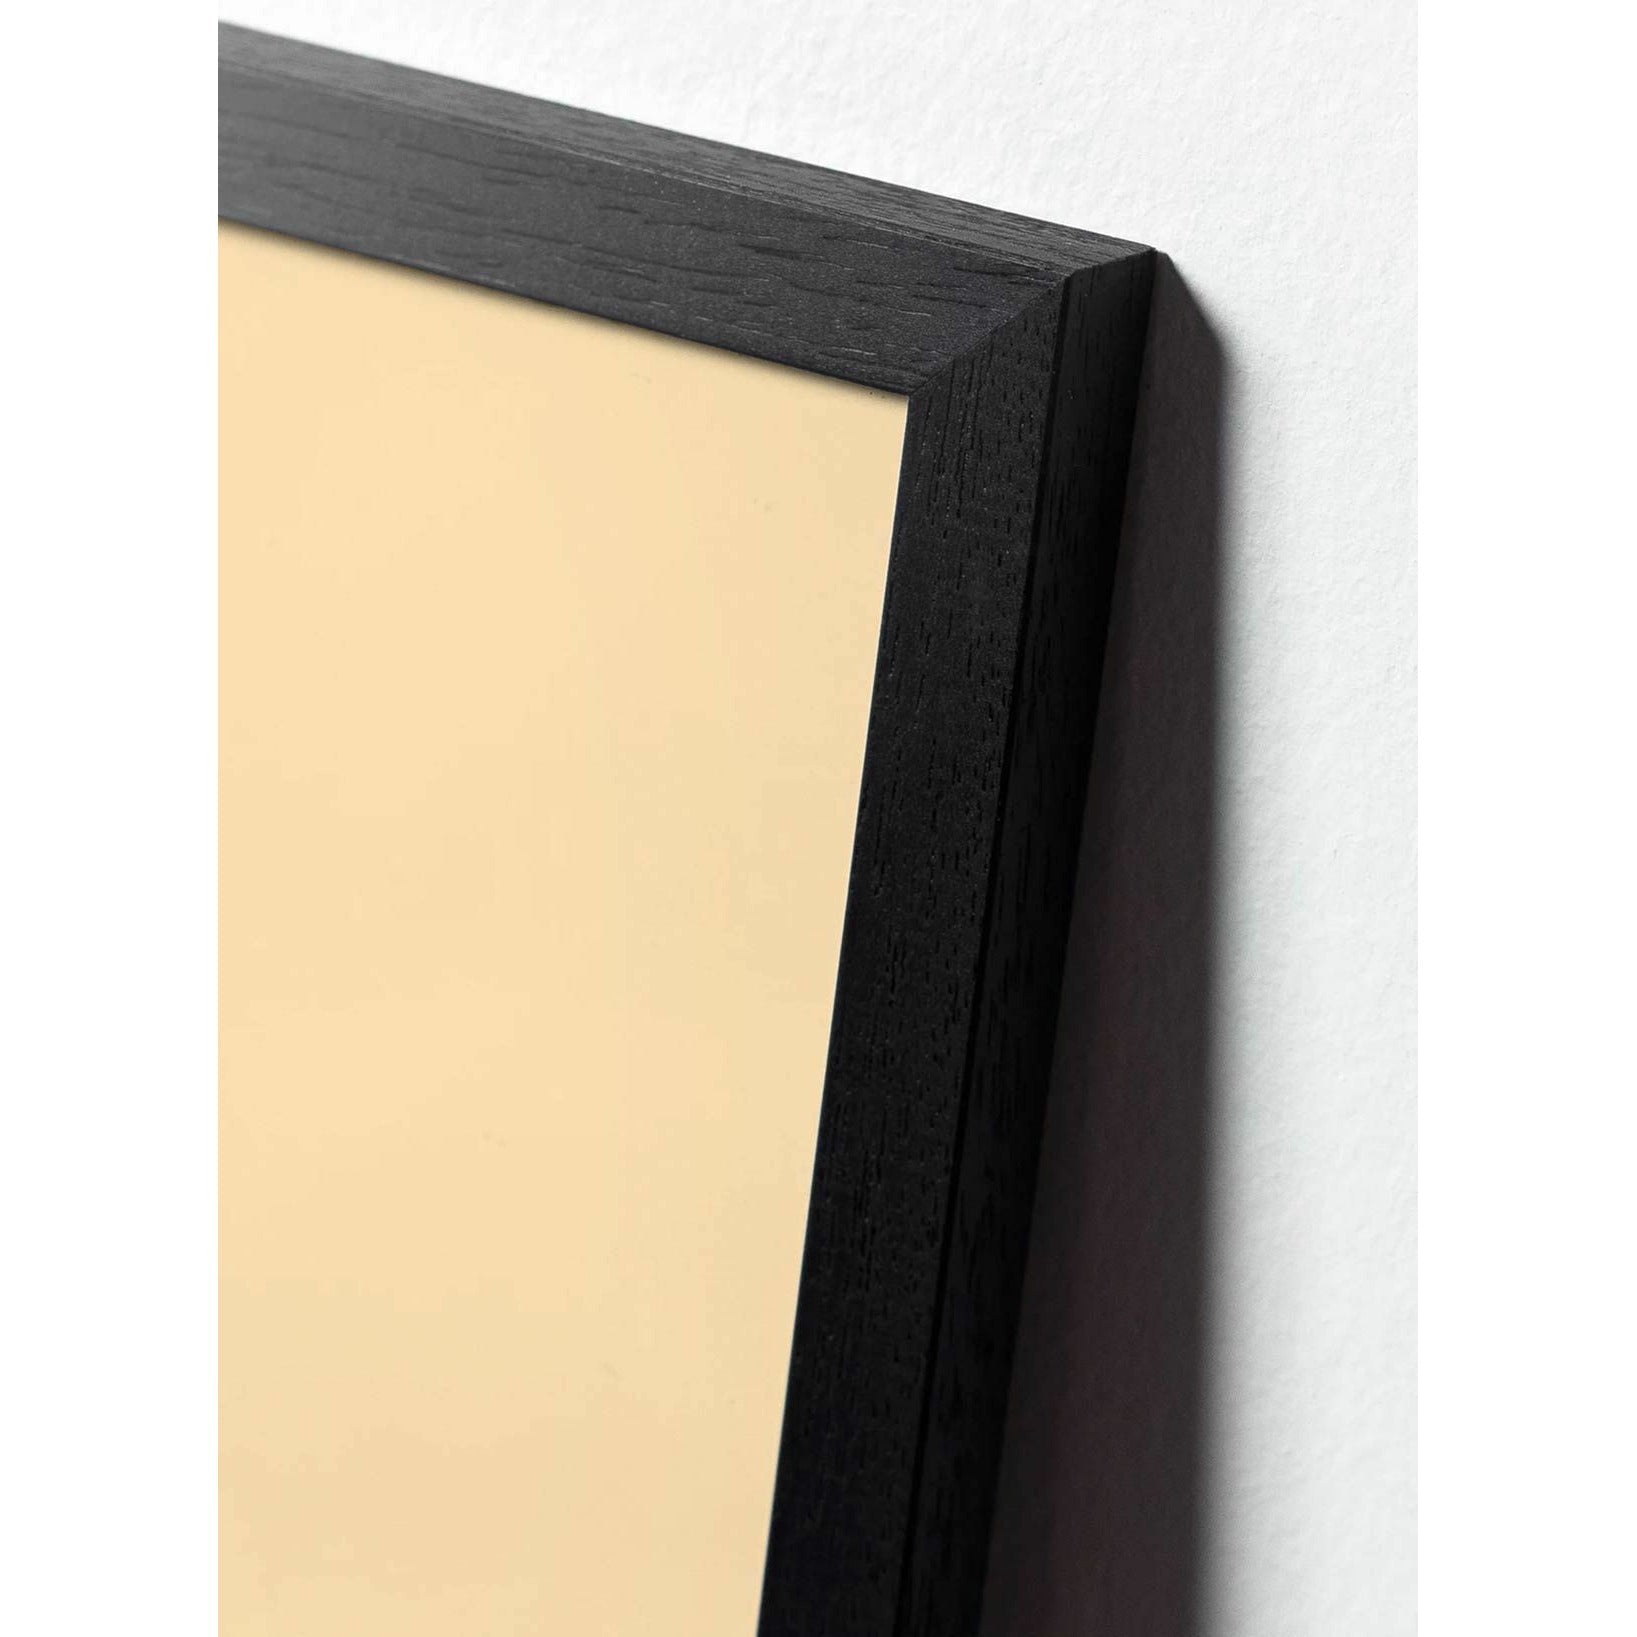 Klasický plakát s kapkou mozků, rám v černém lakovaném dřevu 30x40 cm, pískově barevné pozadí